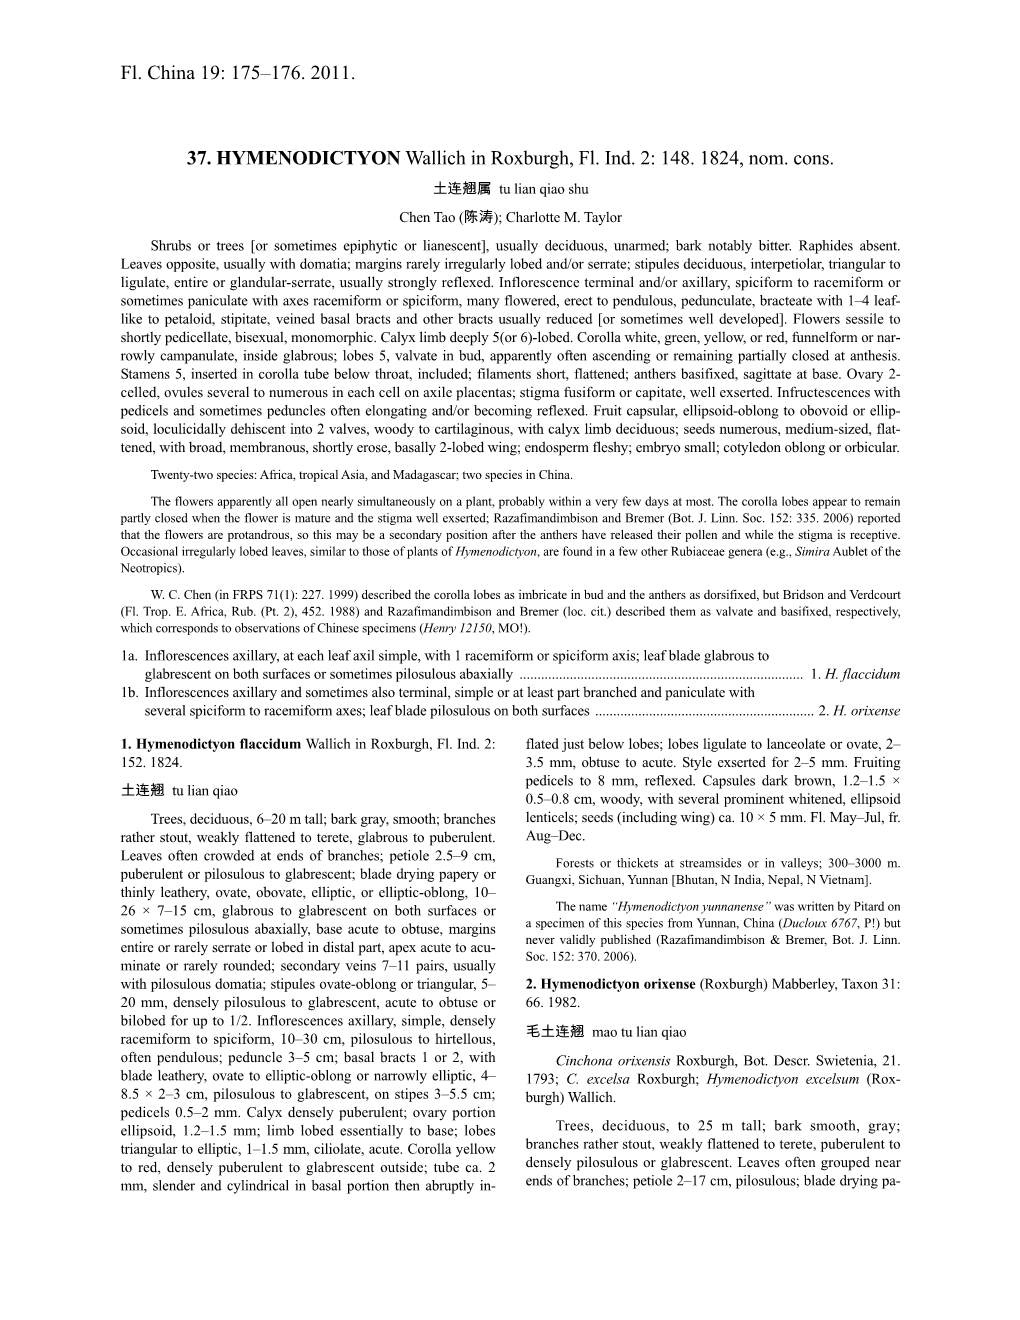 Hymenodictyon (PDF)